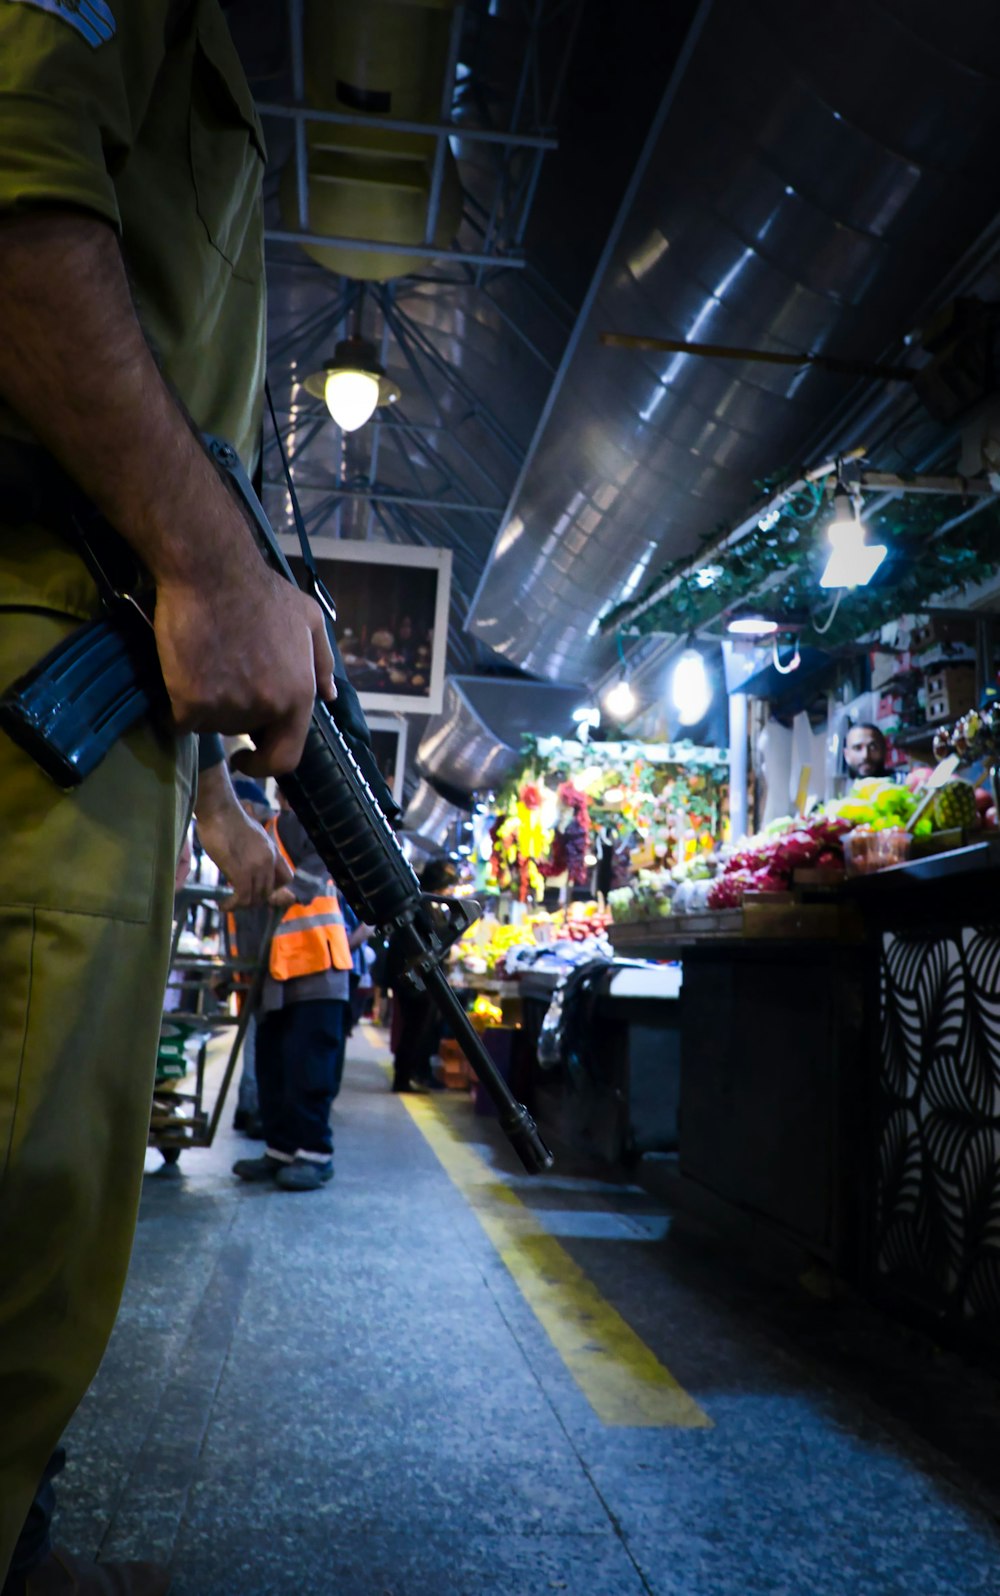 Un homme tenant une arme à feu dans un marché